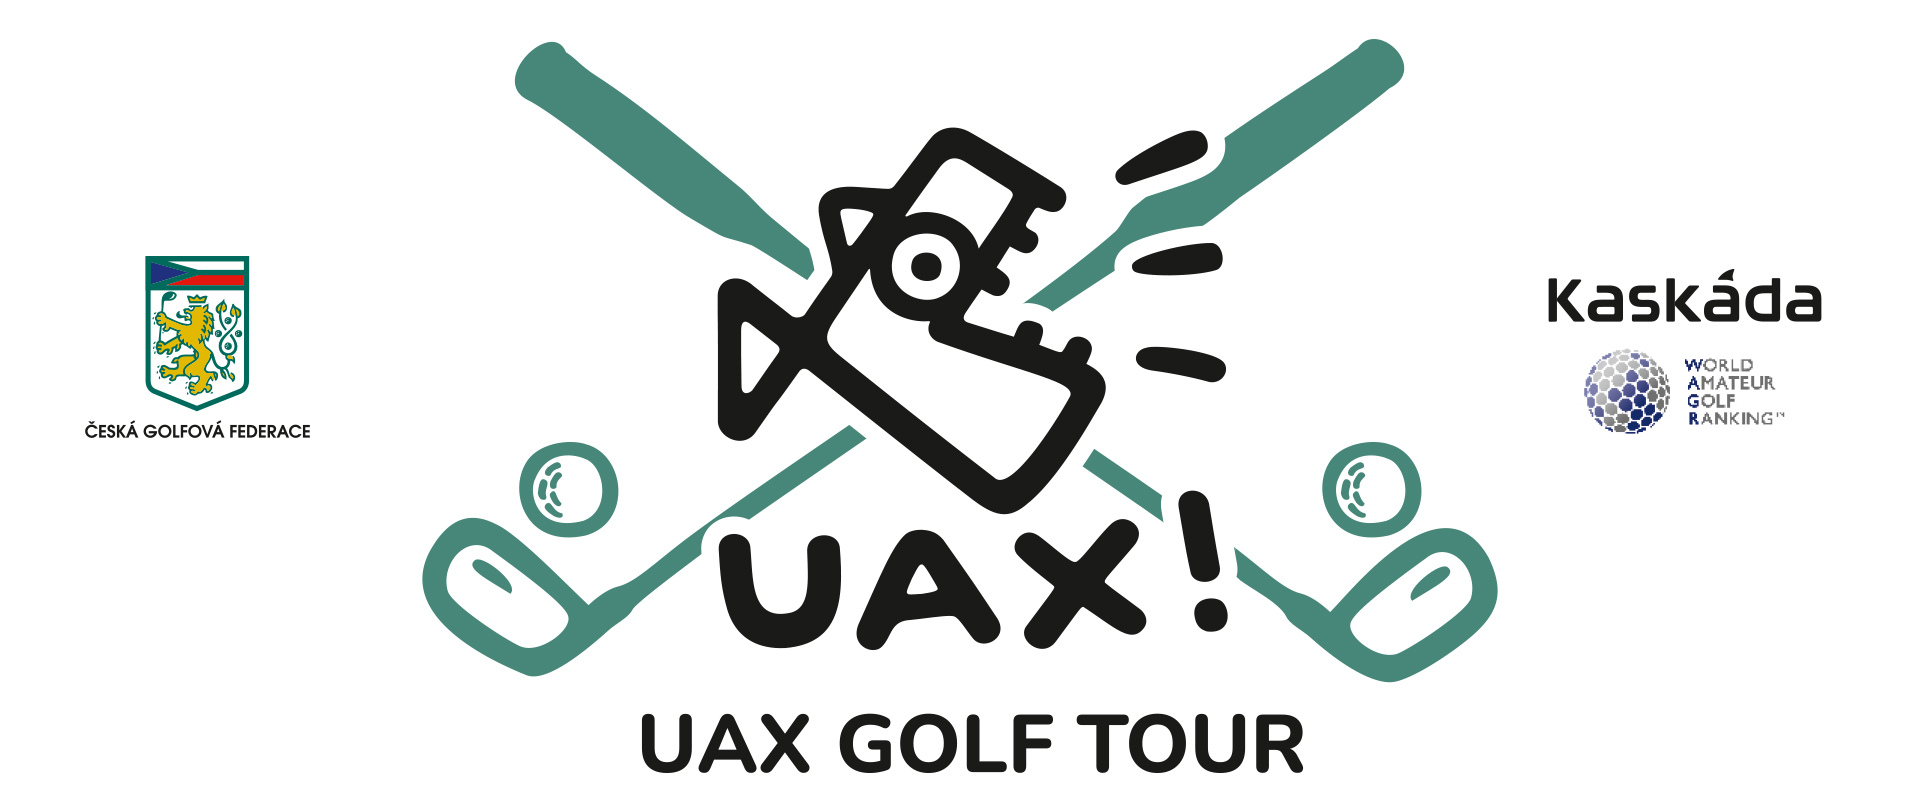 UAX Golf Tour Kaskáda - mistrovská kategorie (WAGR)